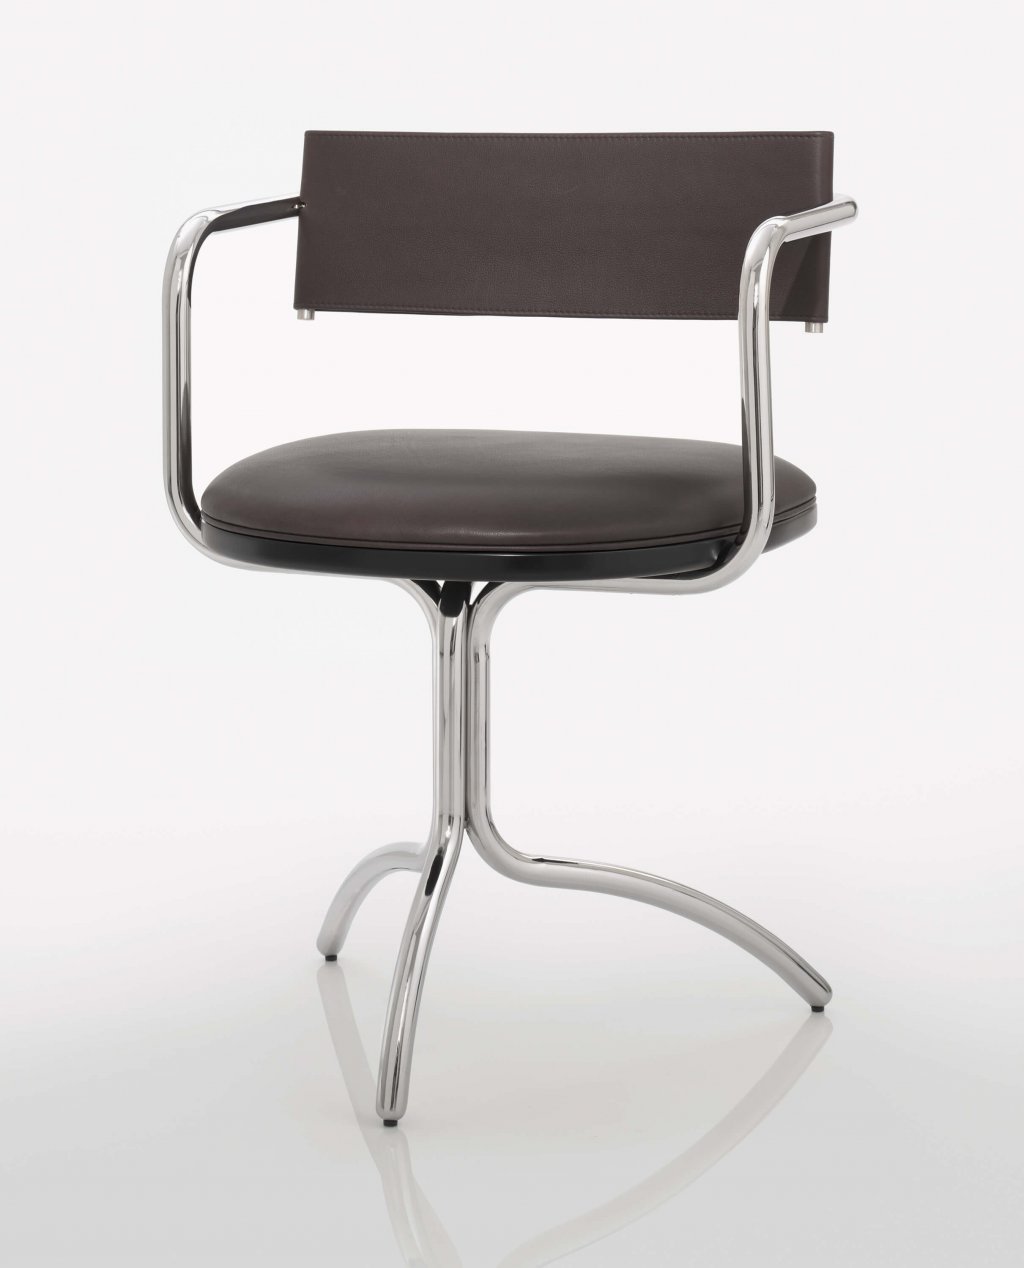 Mergentime Chair, Friedrich Kiesler, 1933